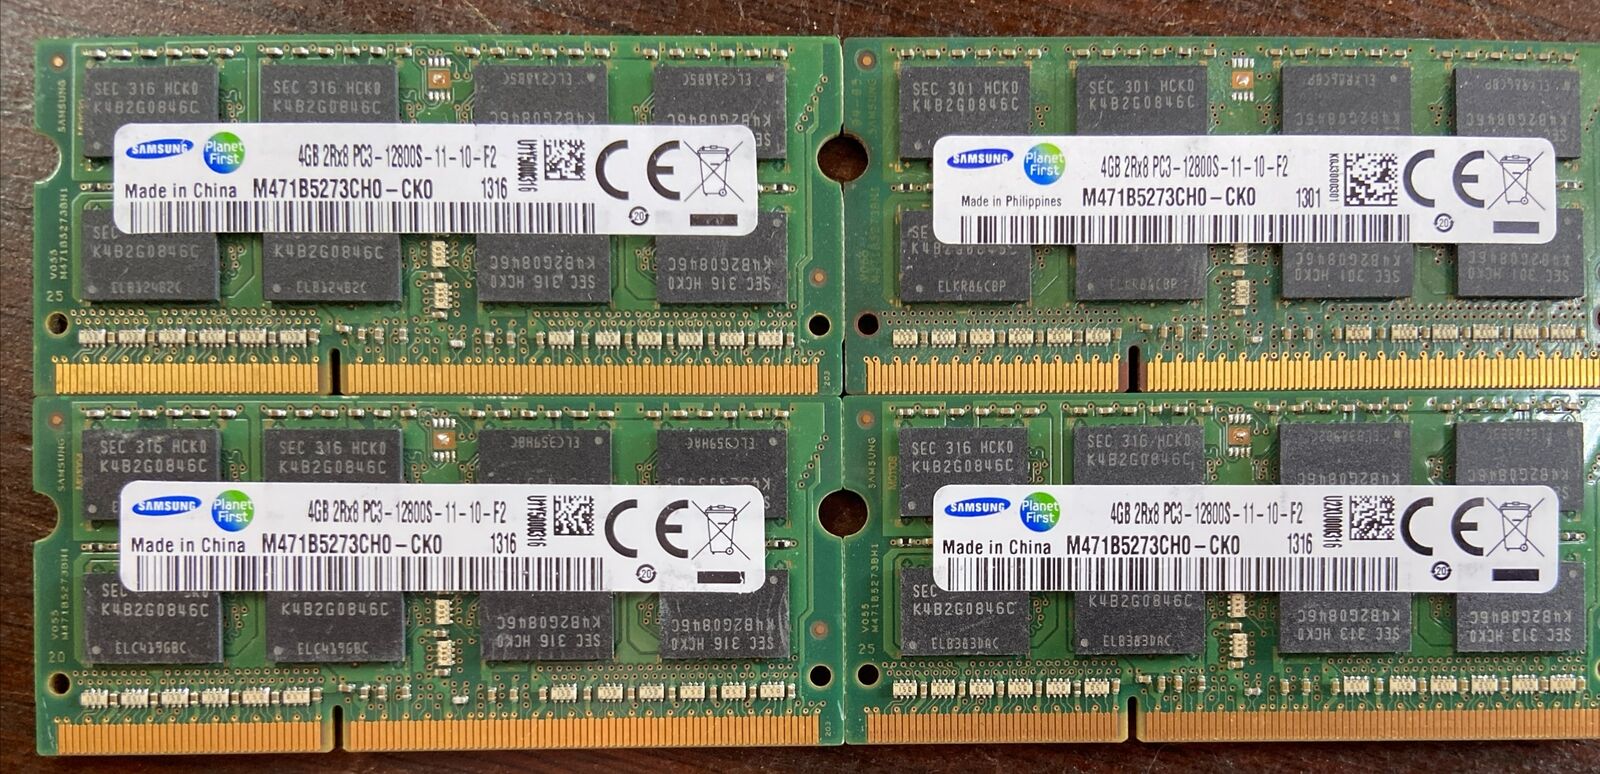 Lot of 4 Samsung 4GB DDR3 RAM 2Rx8-PC3-12800S-11-10-F2